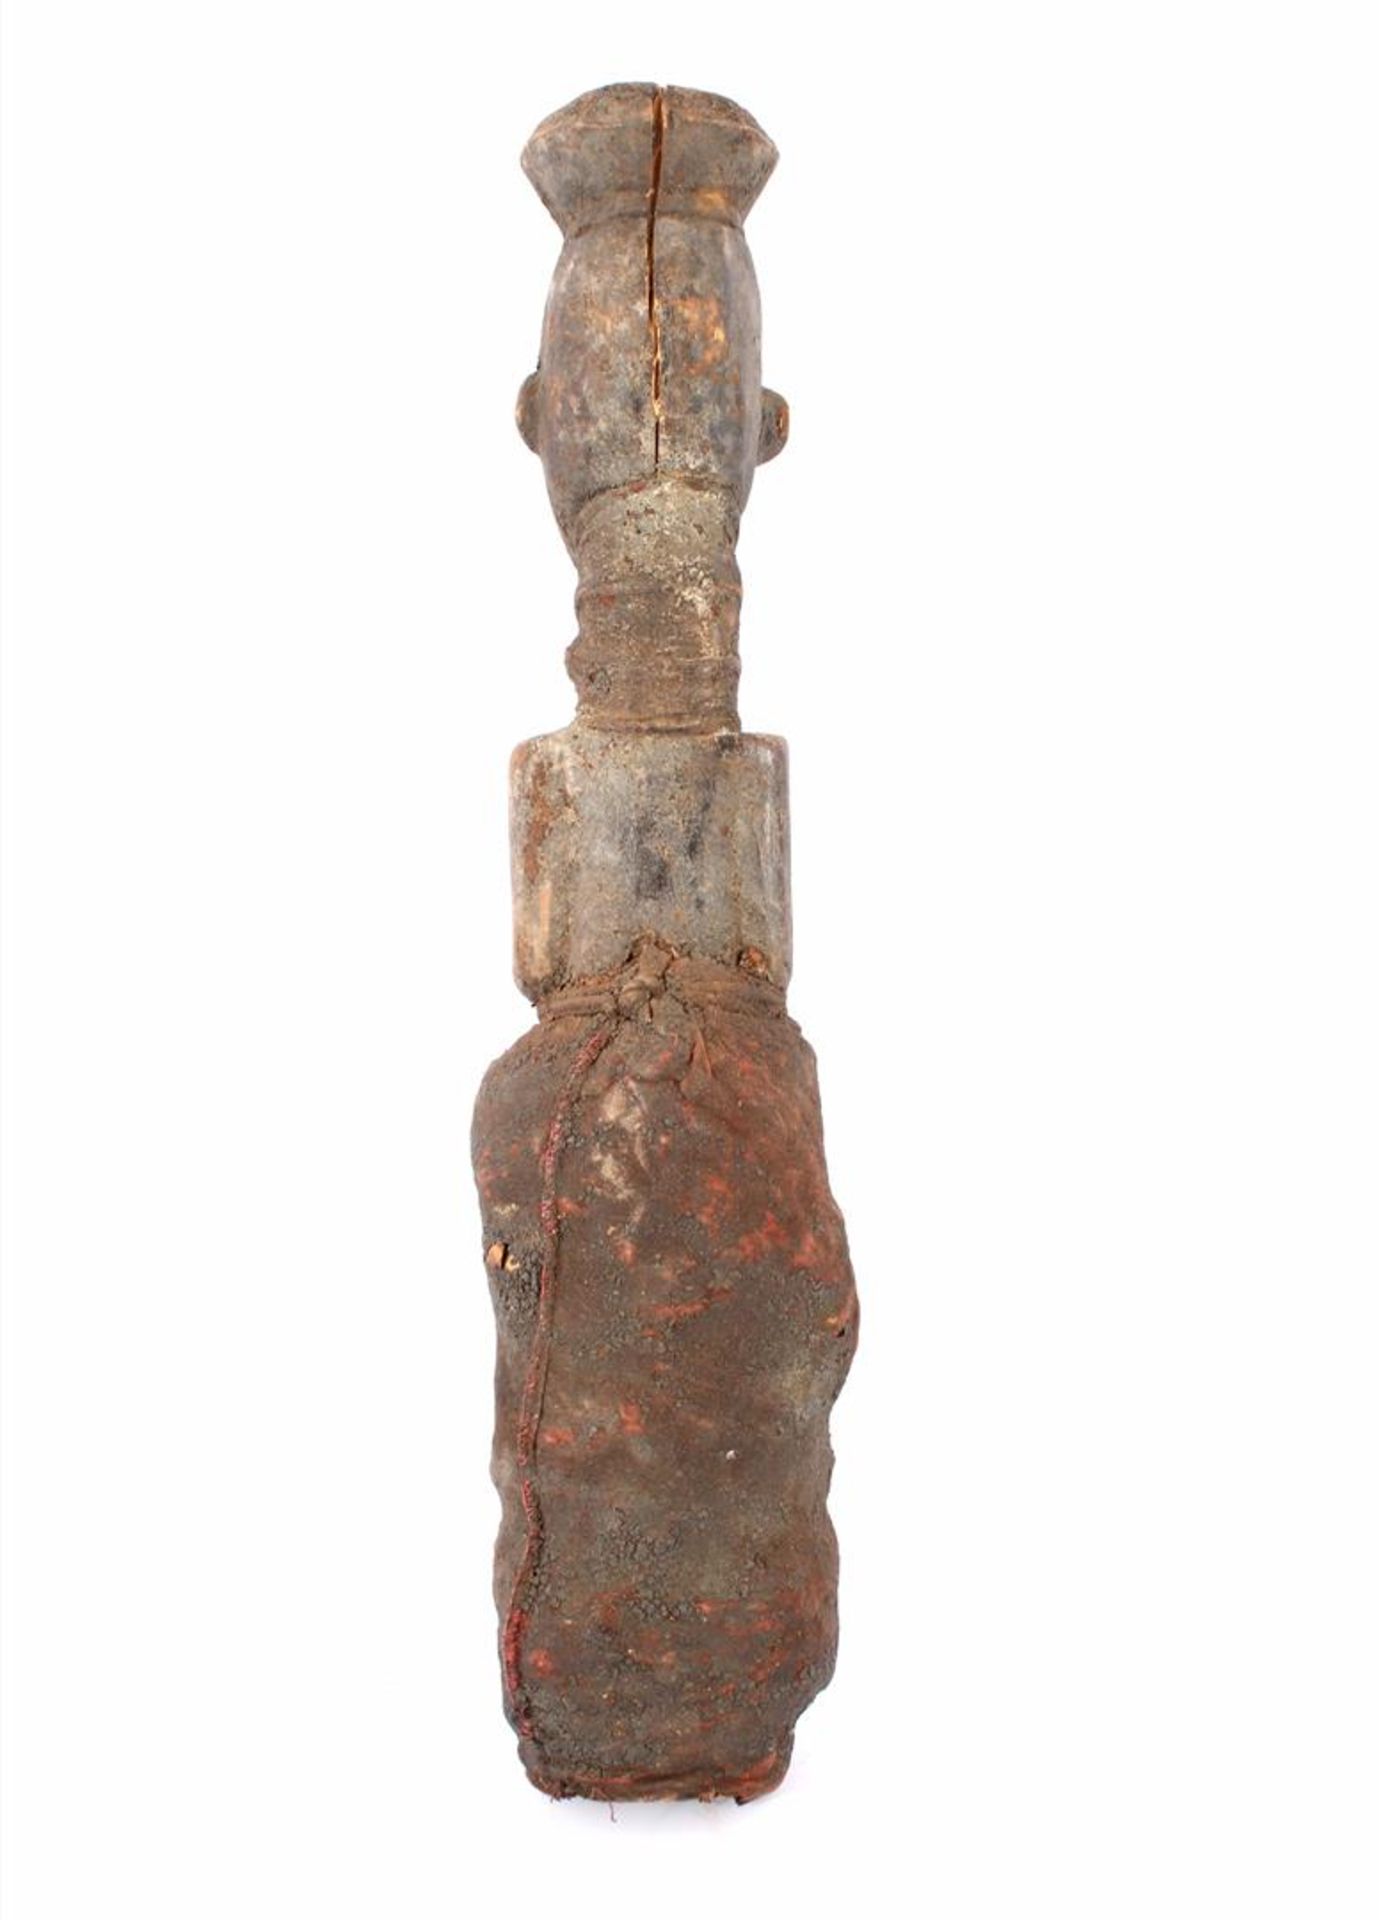 Houten bestoken ritueel beeld van figuur met textiel kleding uit Mali 52 cm hoog (gespleten romp) - Bild 2 aus 2